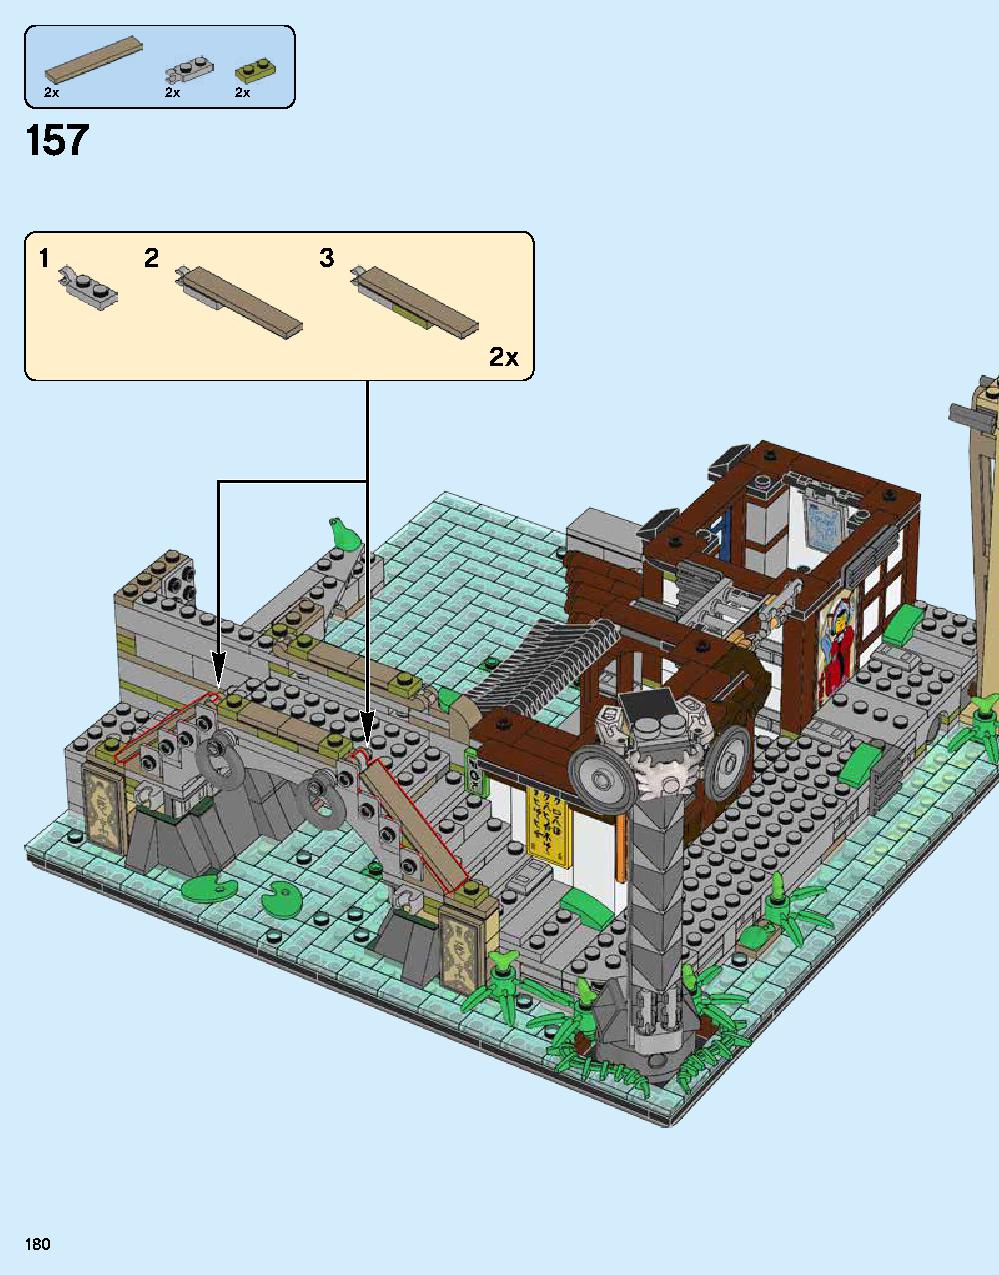 ニンジャゴー シティ 70620 レゴの商品情報 レゴの説明書・組立方法 180 page